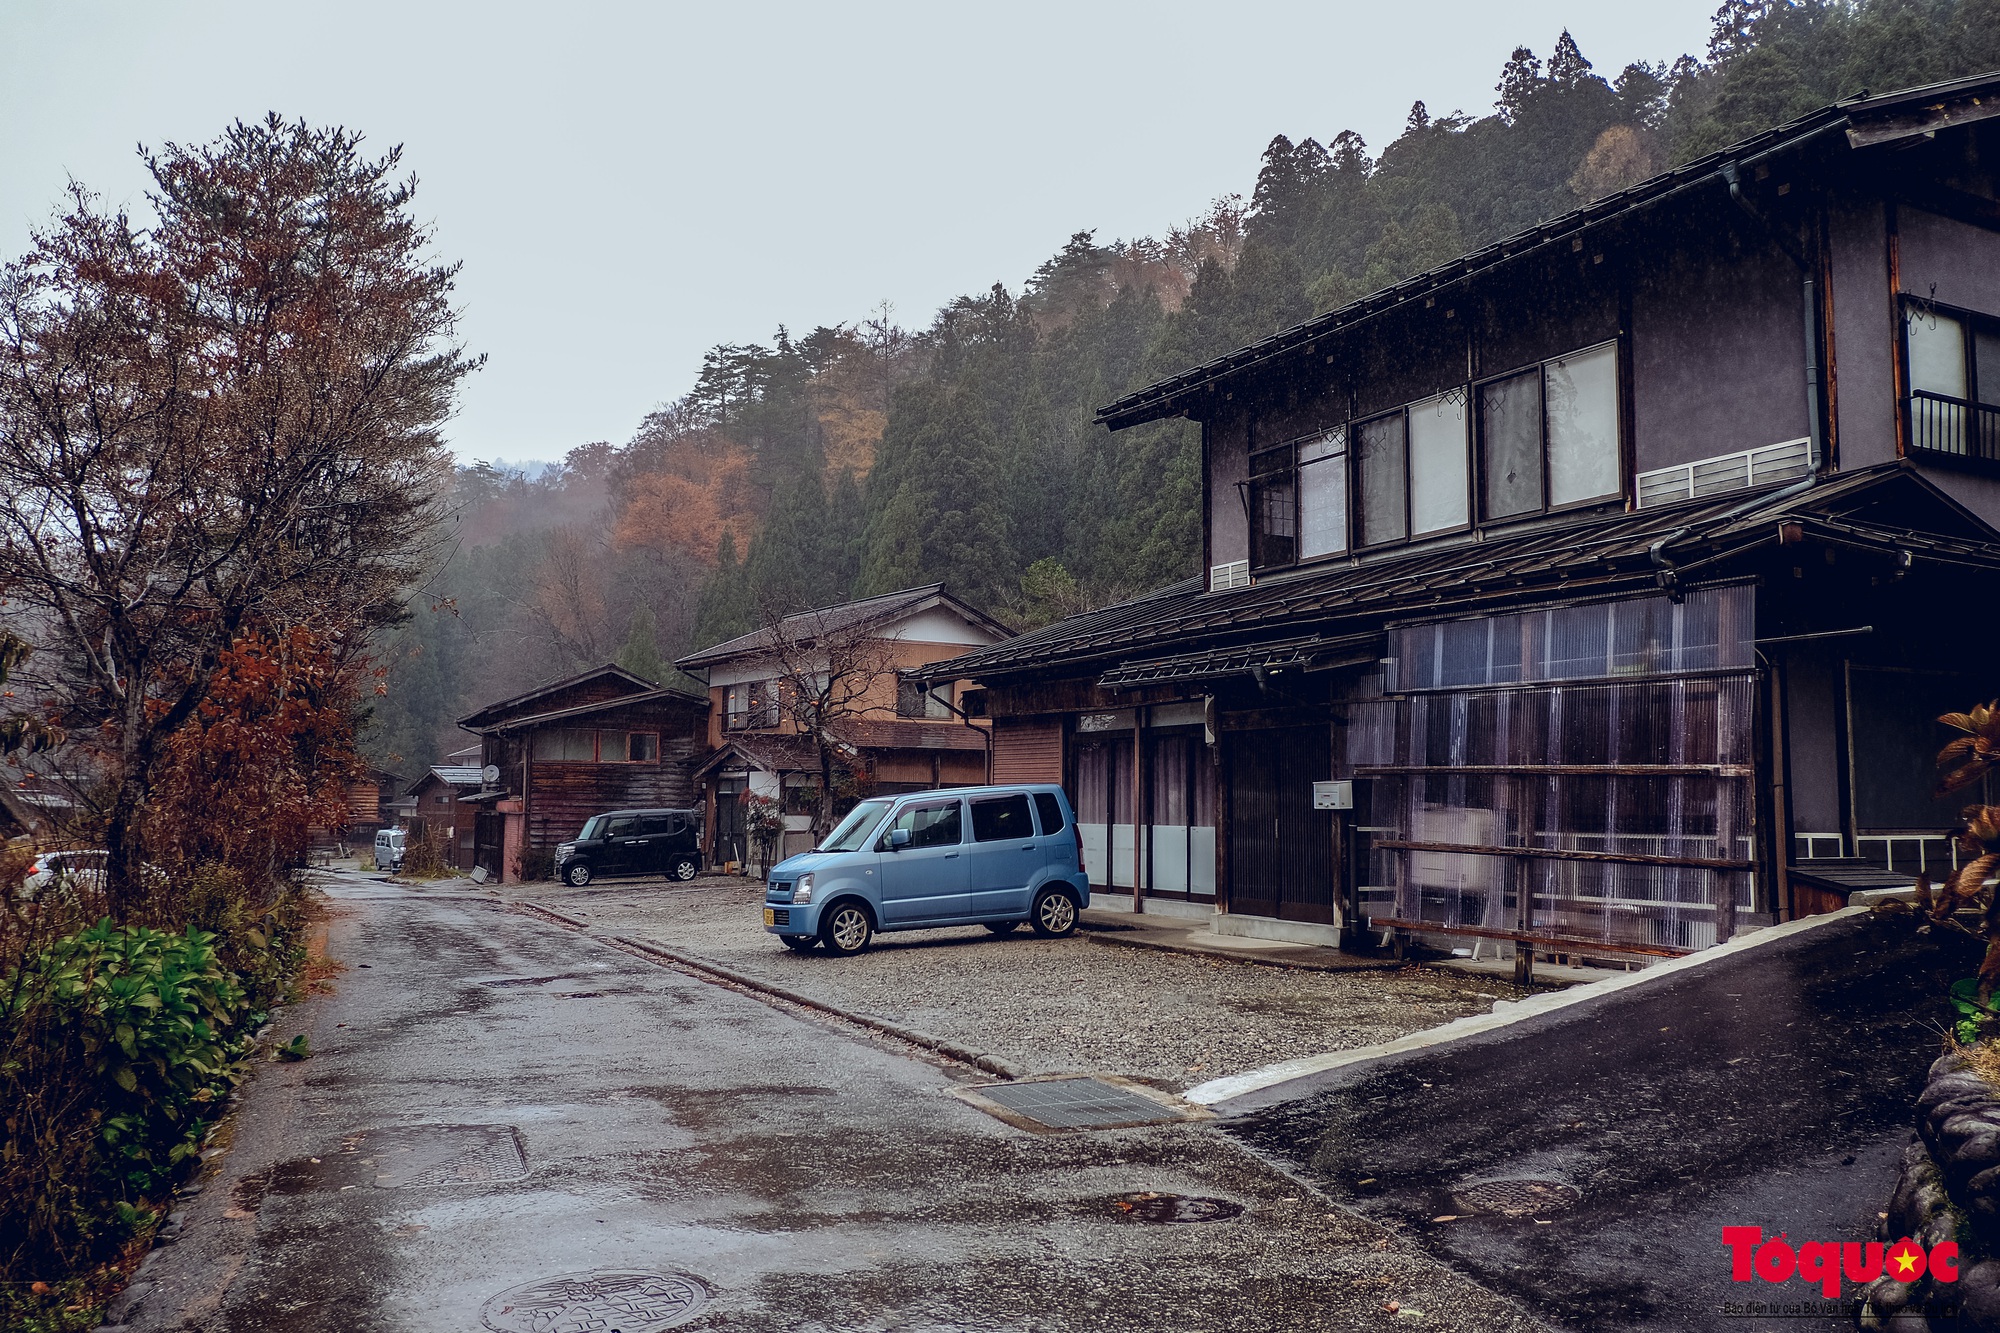 Ghé thăm ngôi làng cổ tích Shirakawago - nơi ra đời bộ truyện tranh Doraemon nổi tiếng - Ảnh 14.